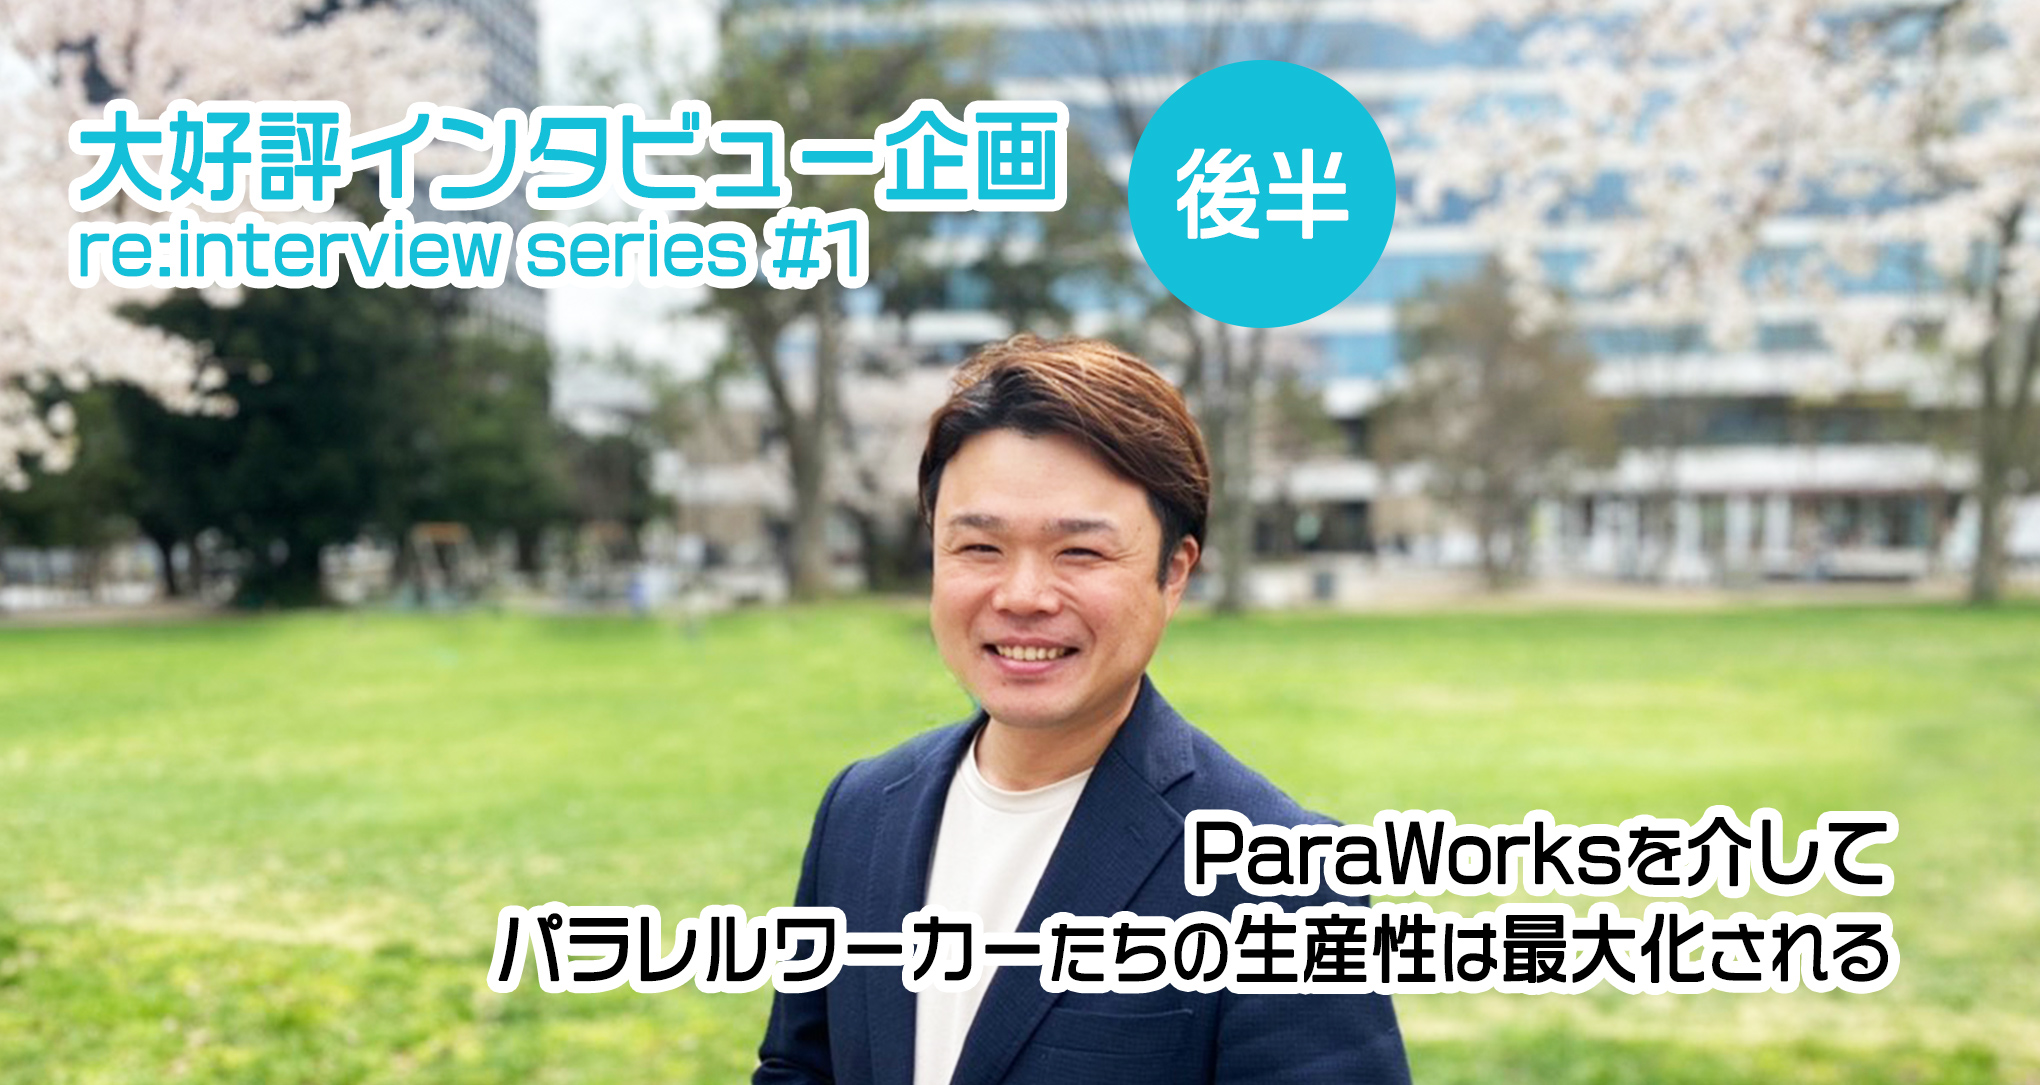 株式会社ParaWorks中村代表インタビュー後半「ParaWorksを介してパラレルワーカーたちの生産性は最大化される」（re:interview series #1-2/2）